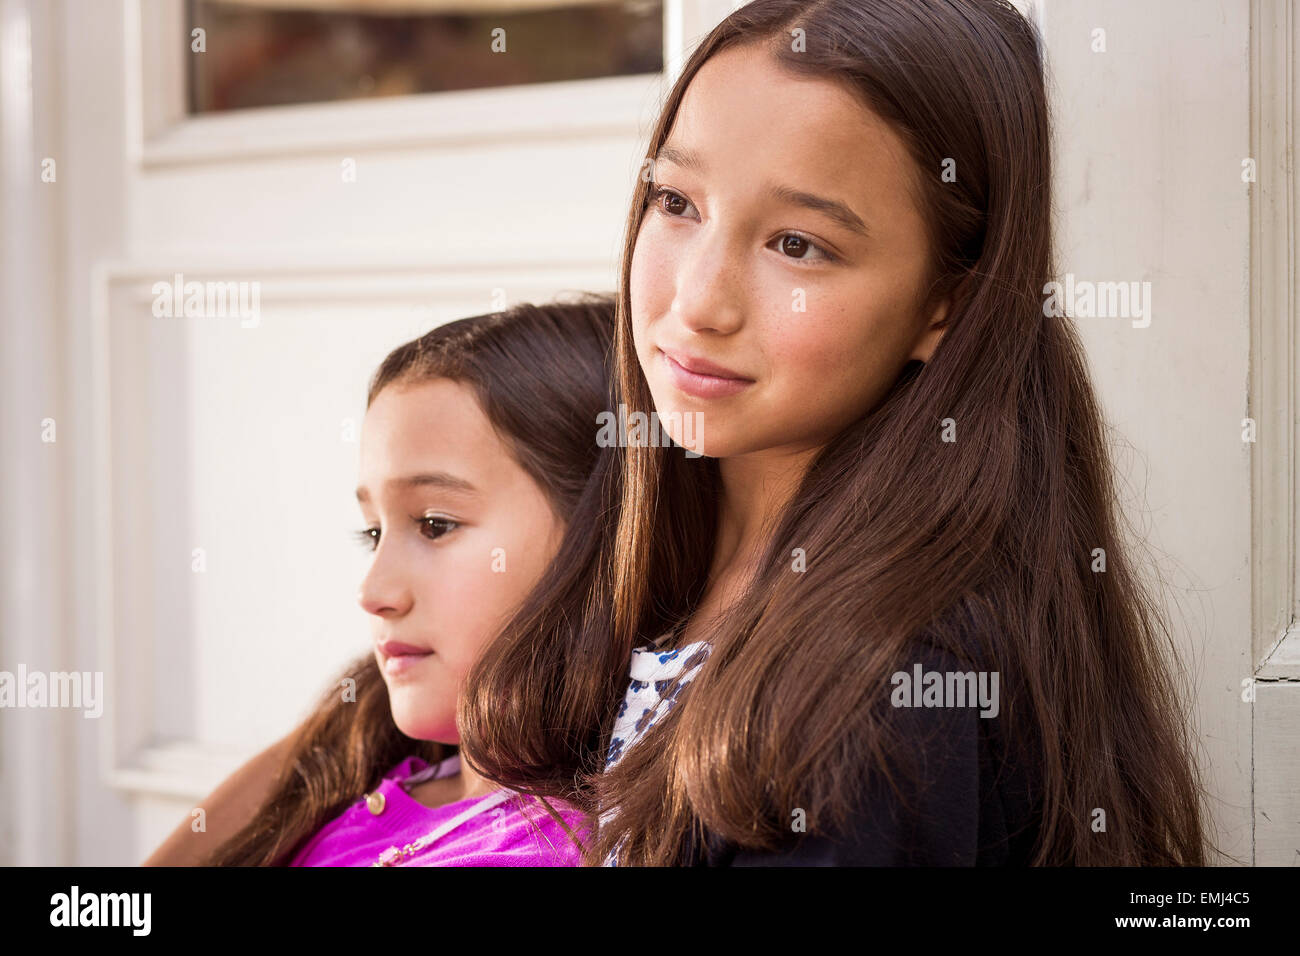 Porträt von zwei jungen Mädchen mit jüngeren Mädchen lehnte sich gegen ältere Mädchen, close-up Stockfoto